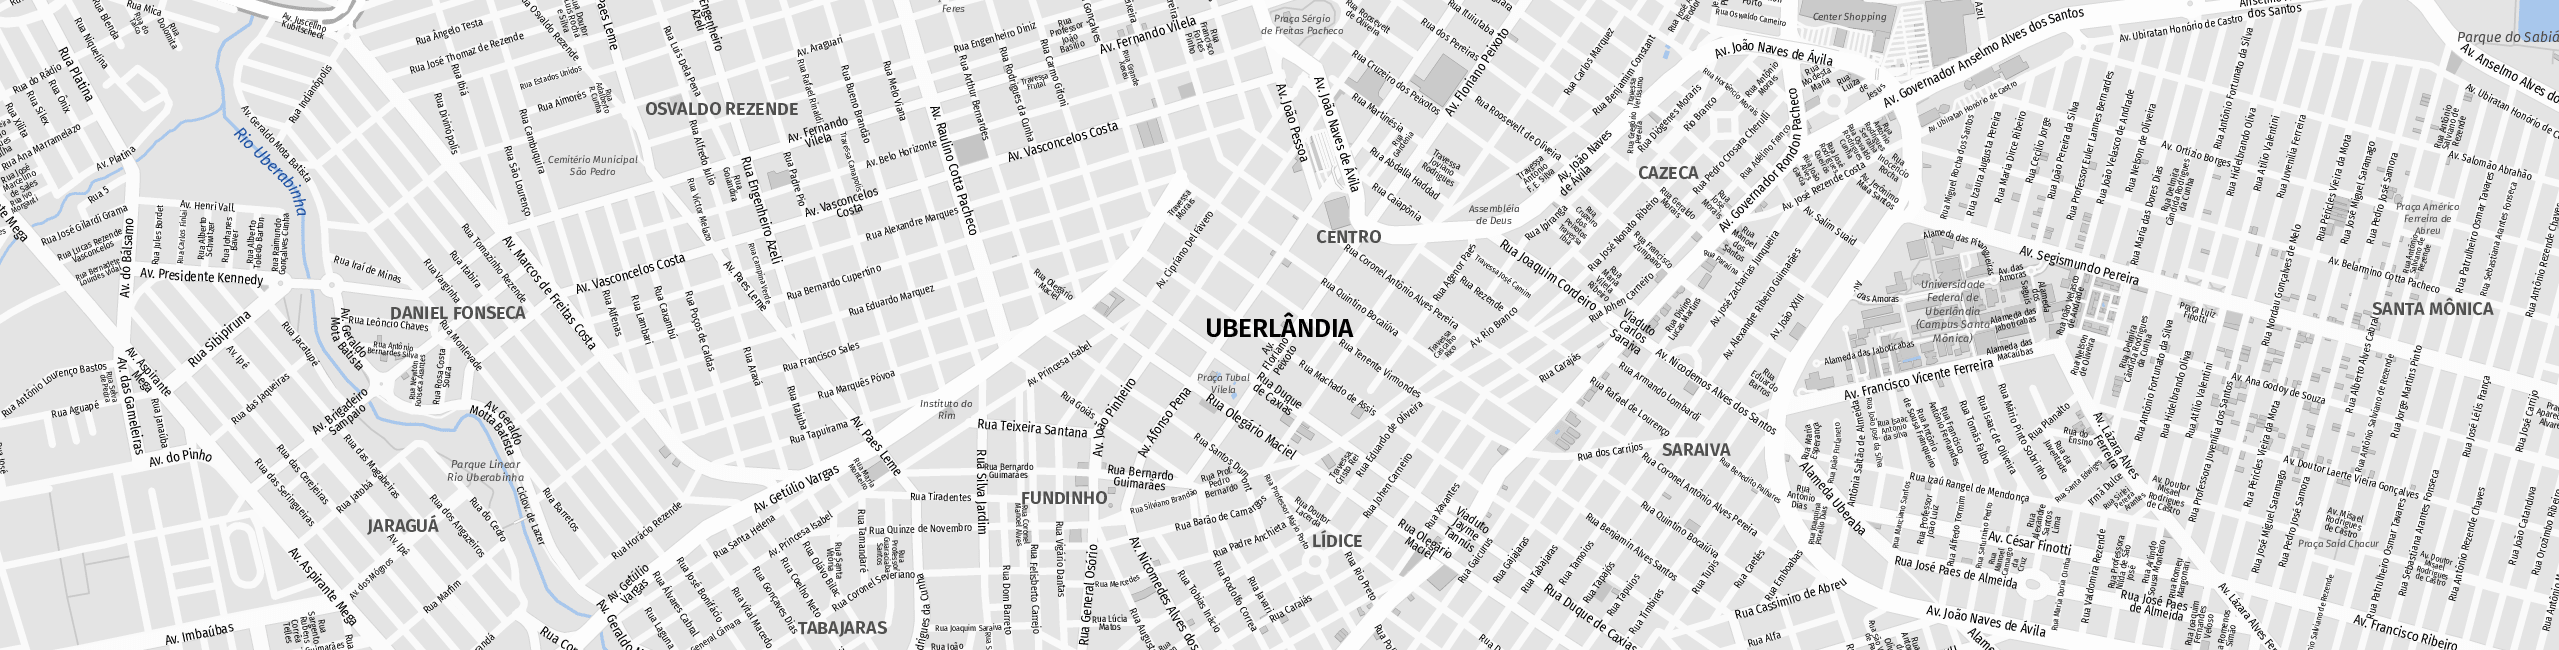 Stadtplan Uberlândia zum Downloaden.